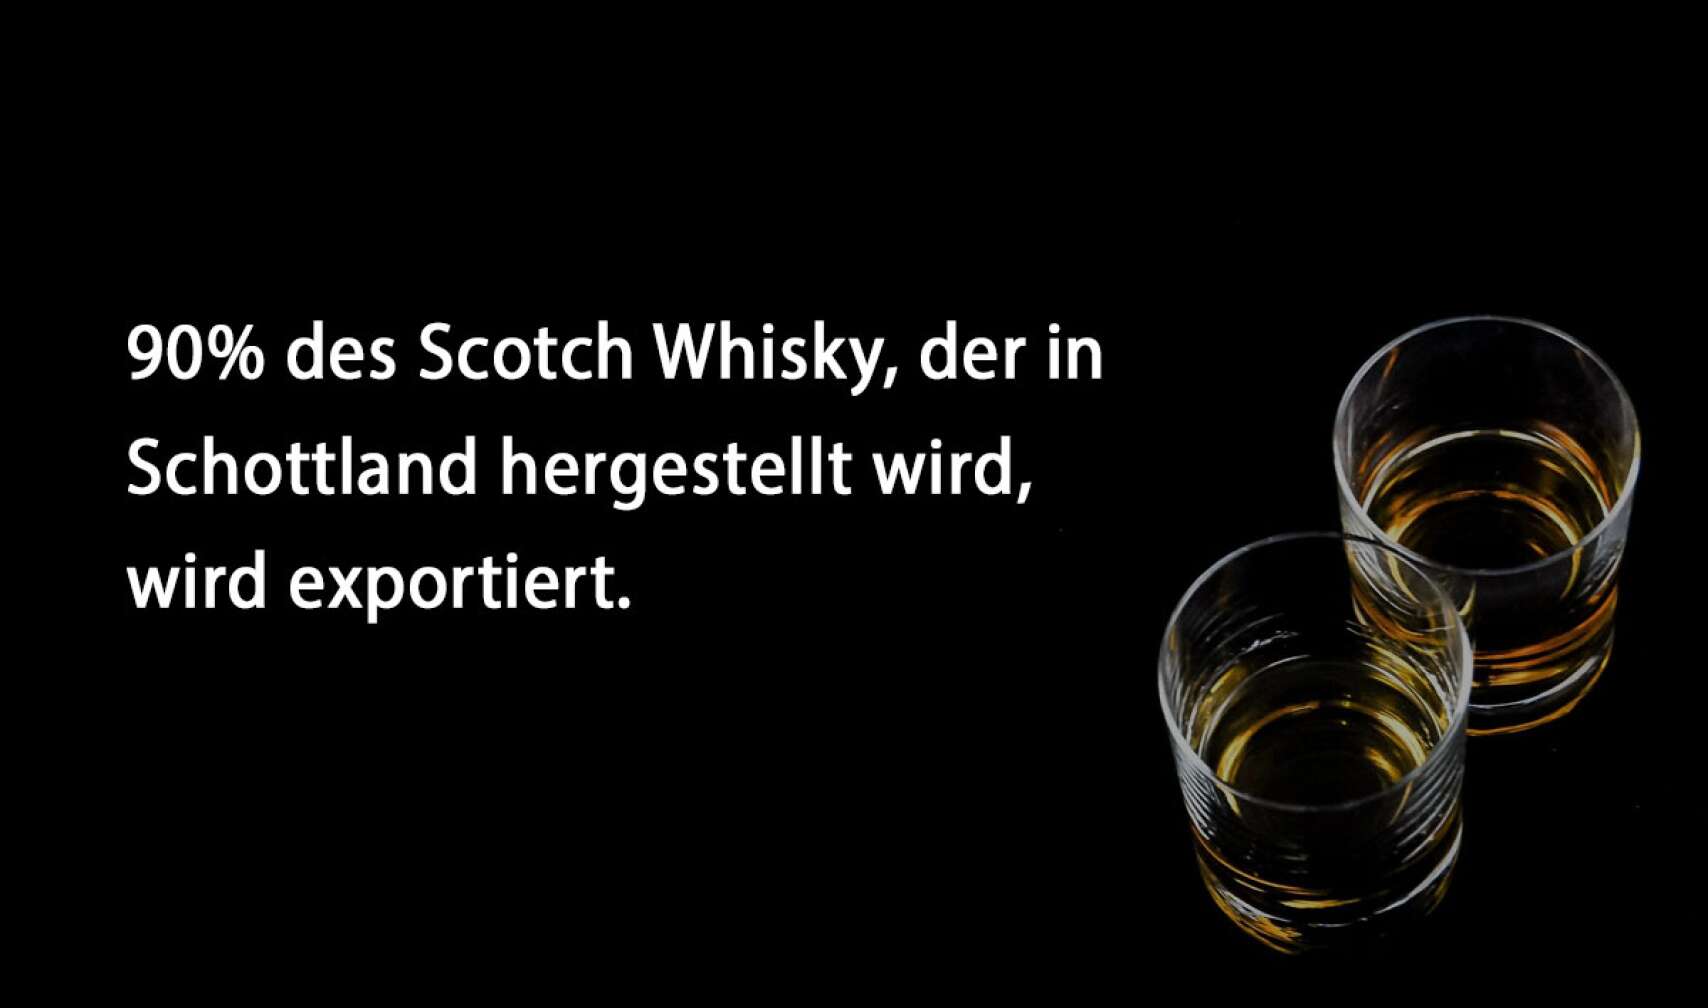 90% des Scotch Whisky, der in Schottland hergestellt wird, wird exportiert.